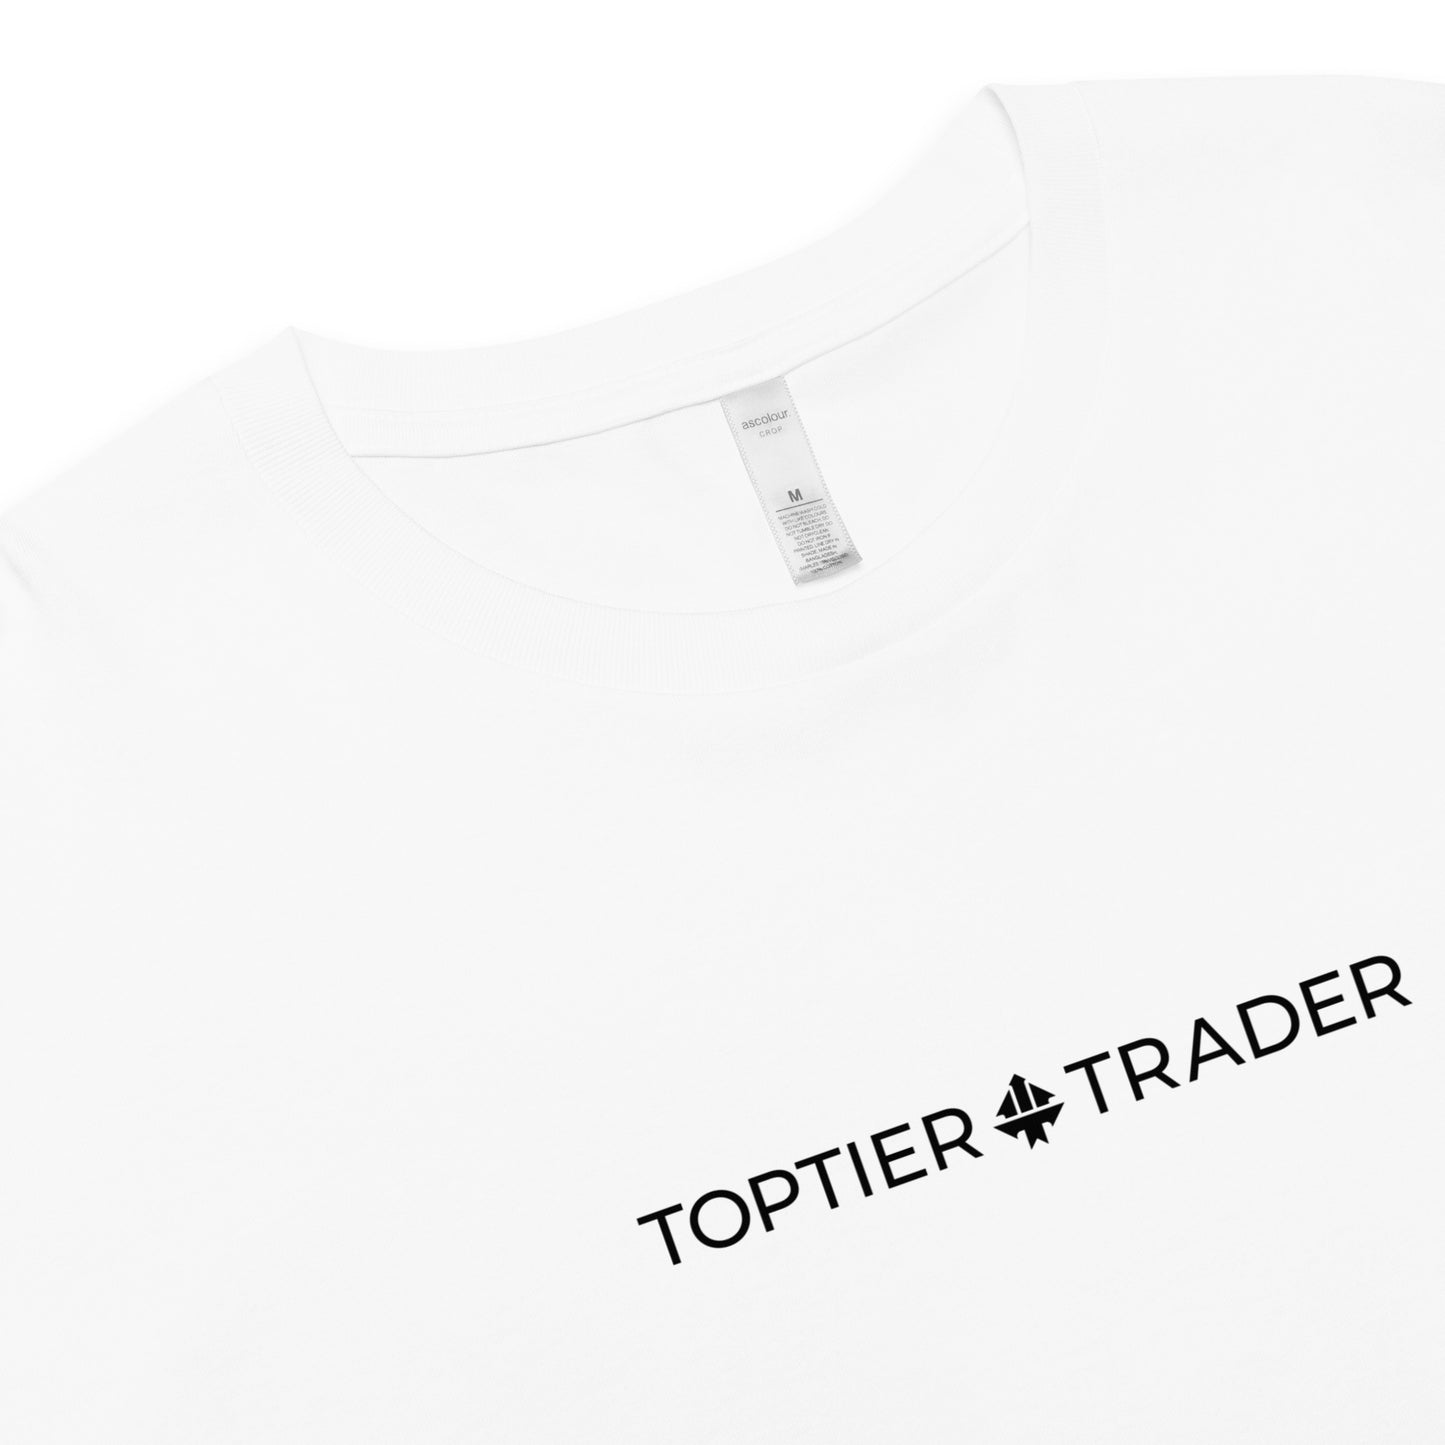 TopTier Trader Premium White crop top